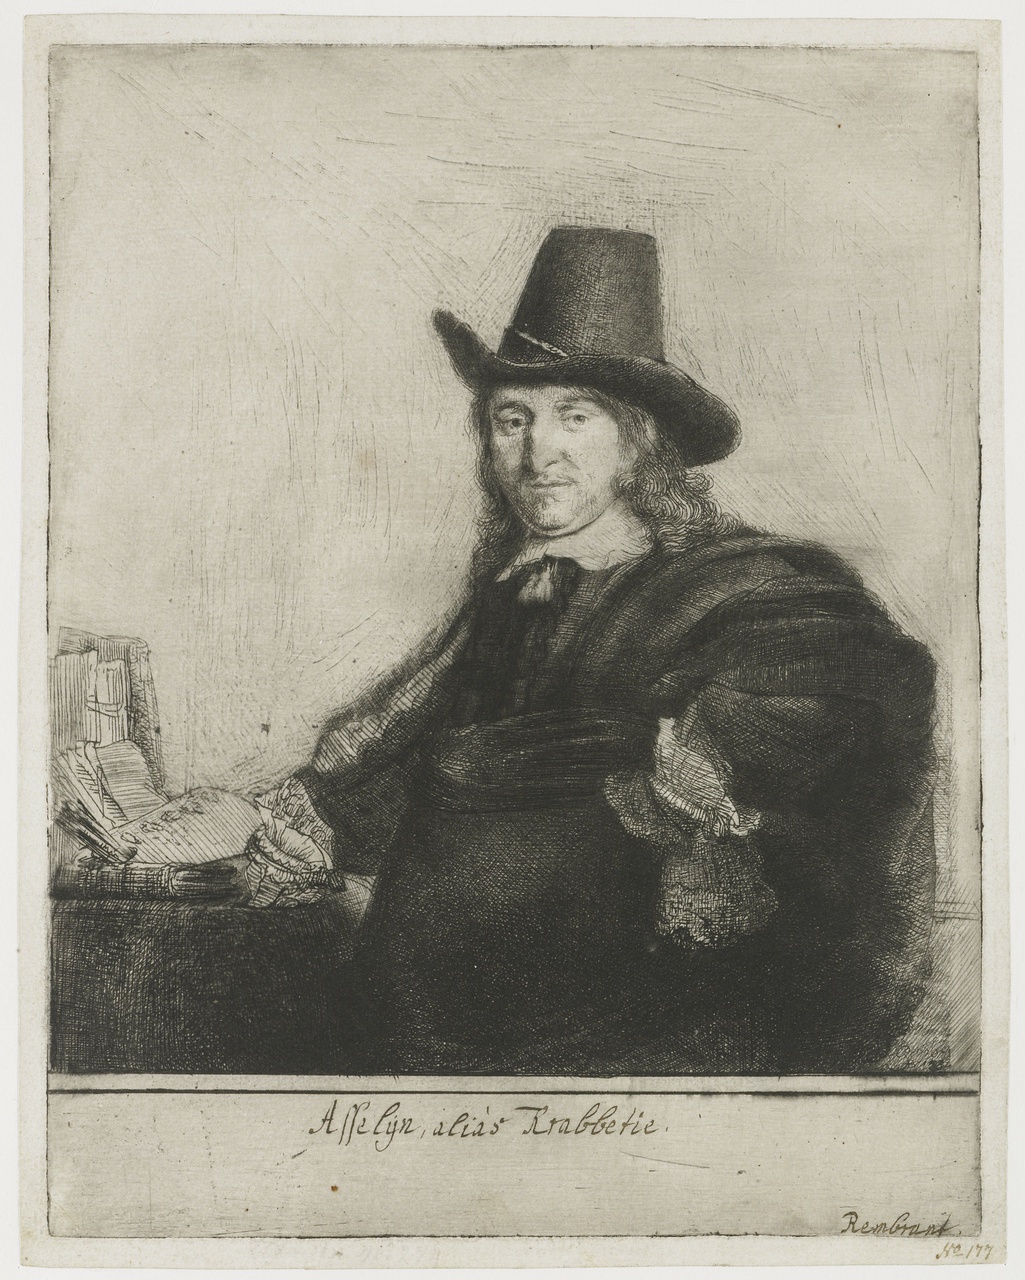 6/15 - Rembrandt, Portret van Jan Asselijn, alias Krabbetje. Collectie Rijksmuseum, inv.nr. RP-P-1961-1152